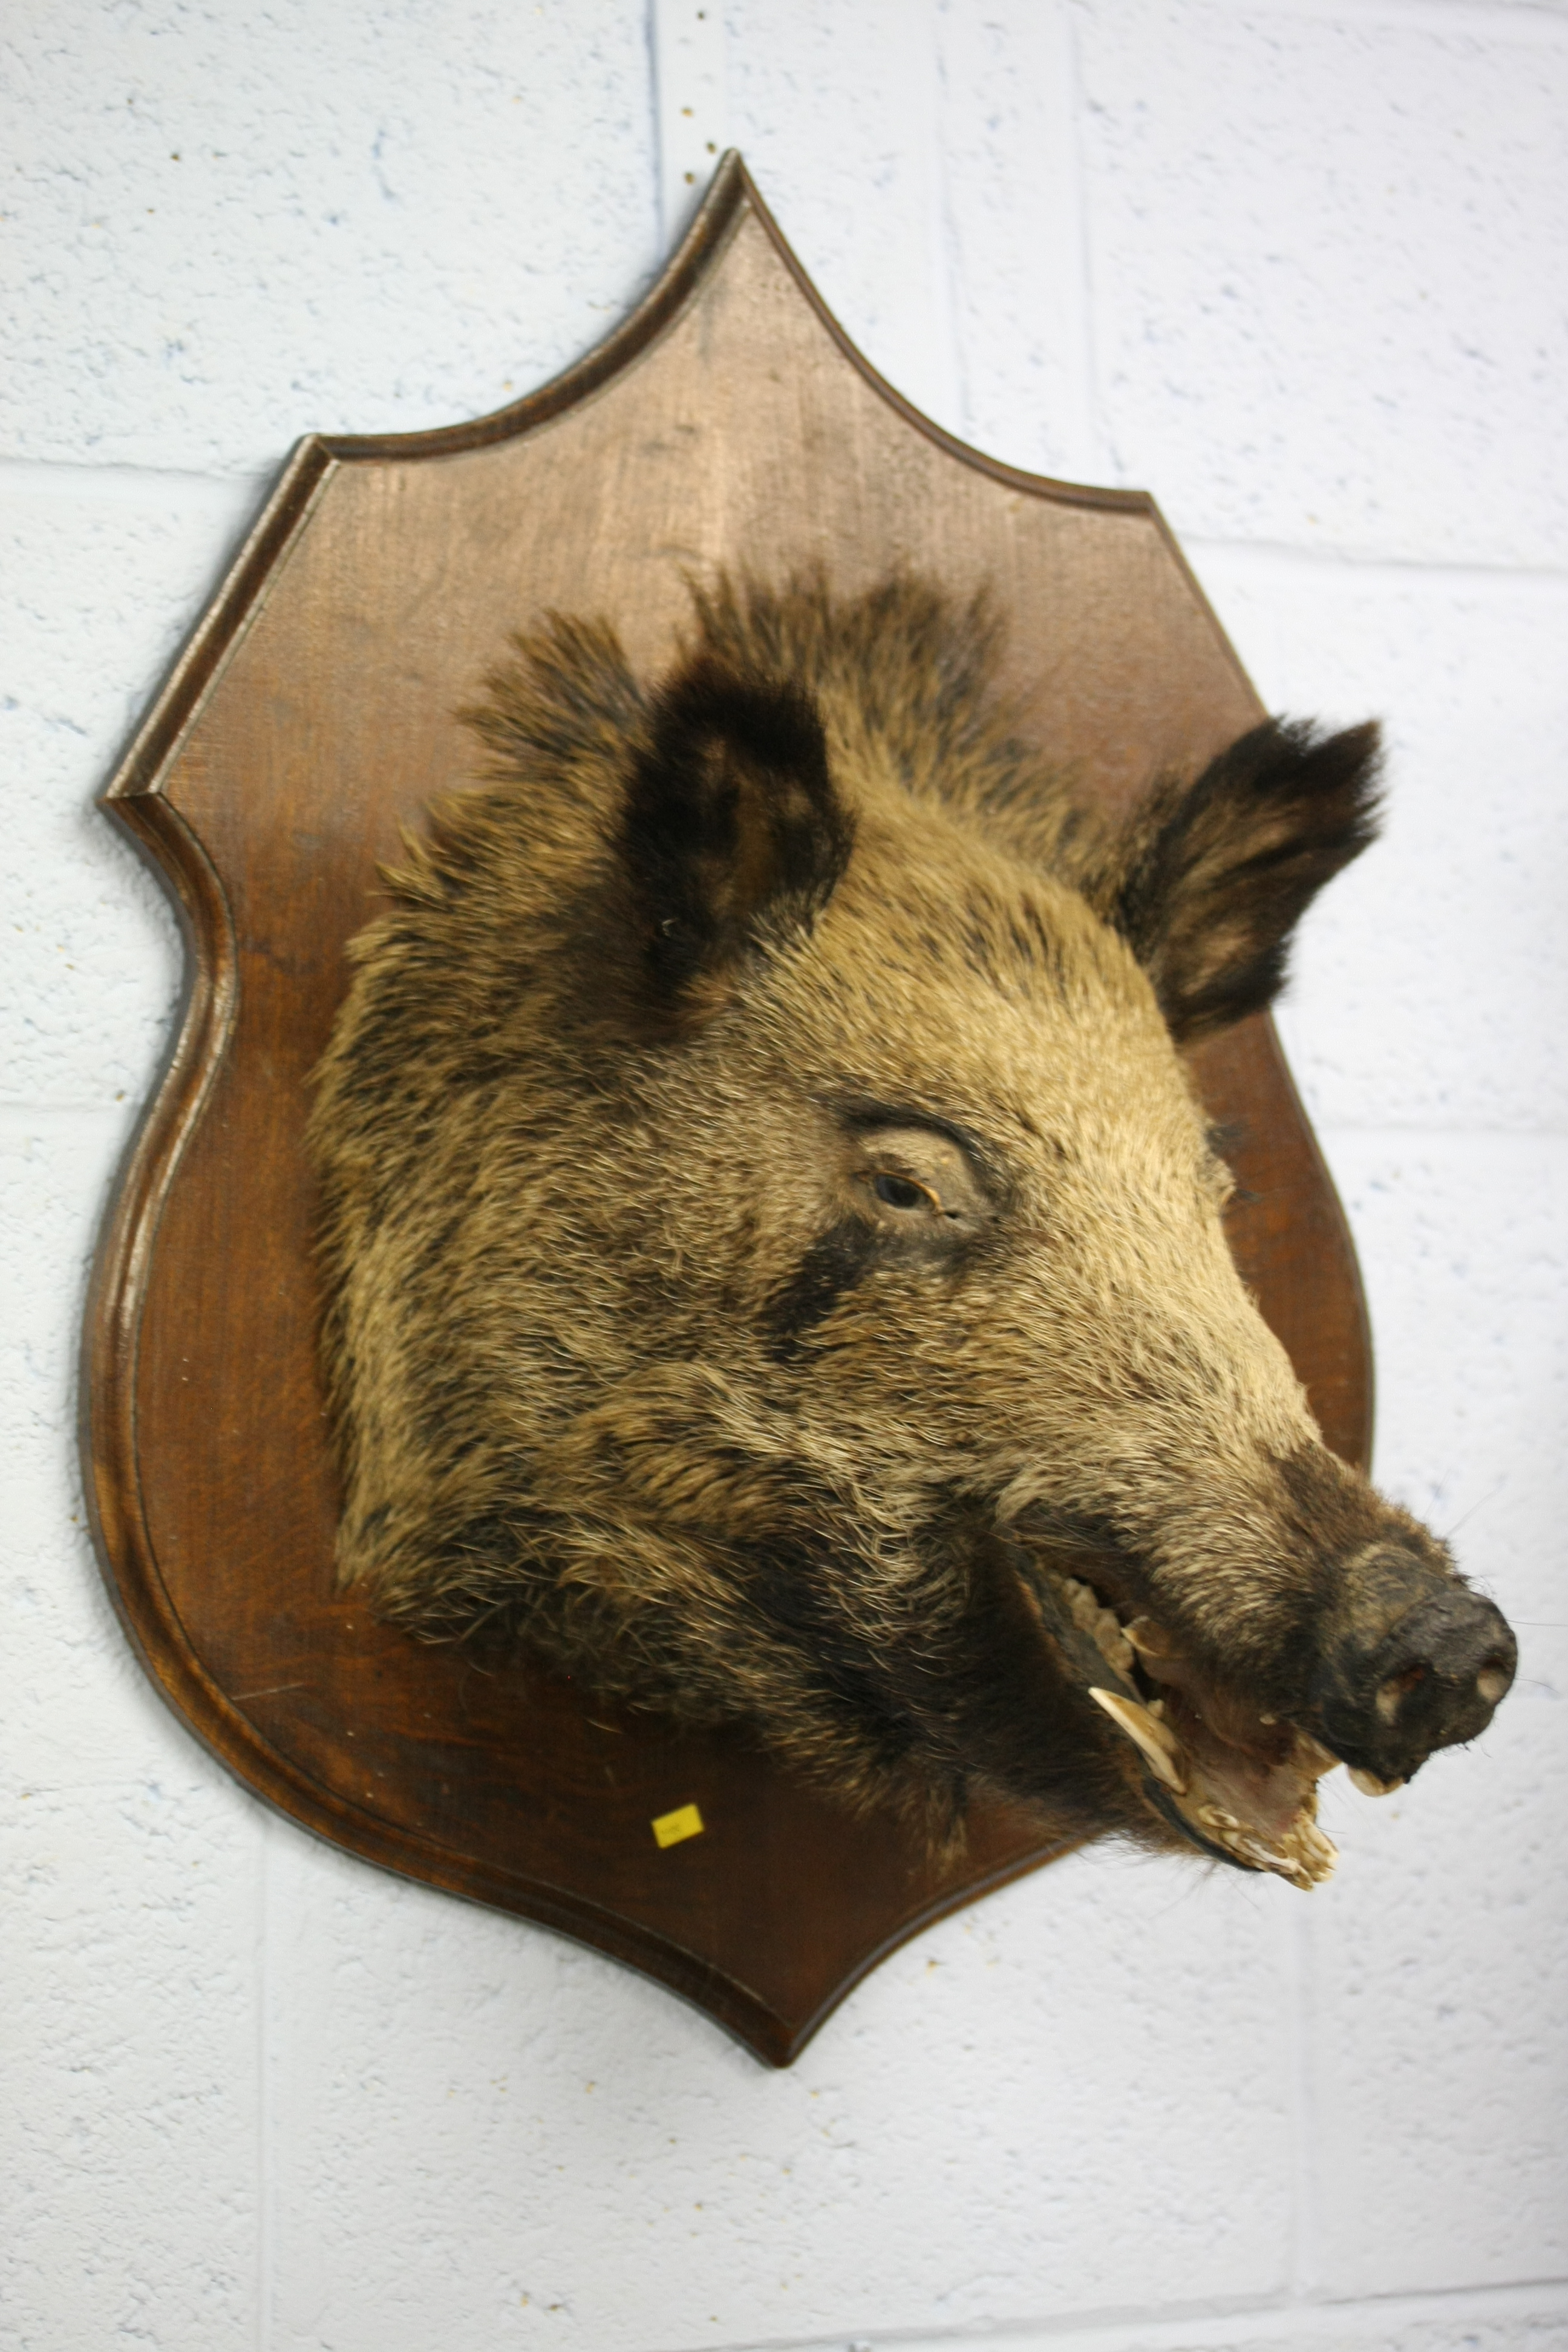 A wall mounted Boar's head.